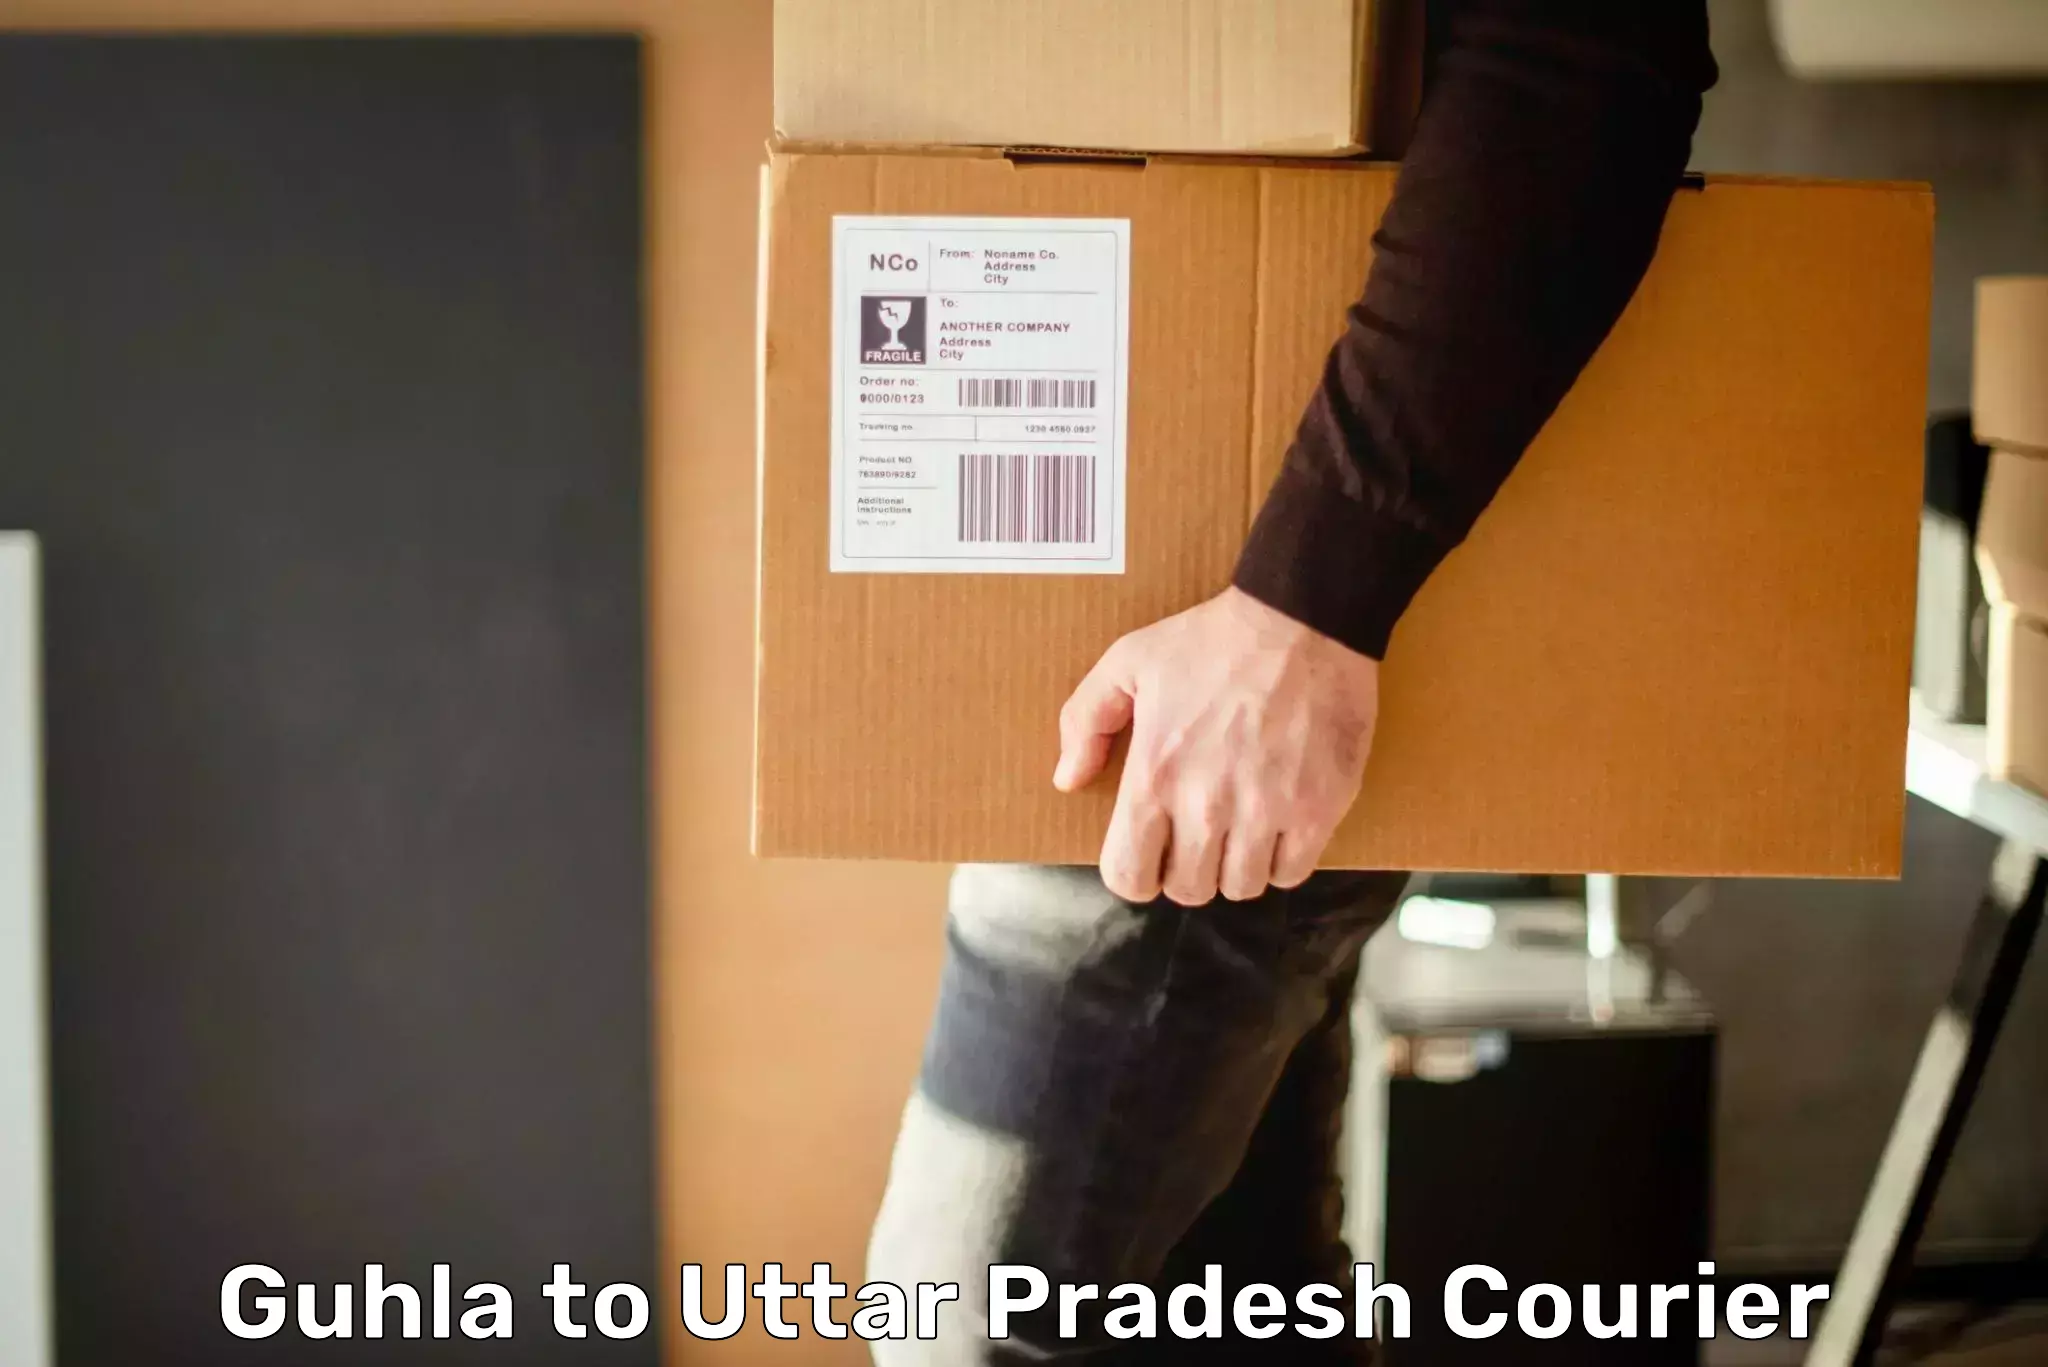 Express logistics service Guhla to Uttar Pradesh